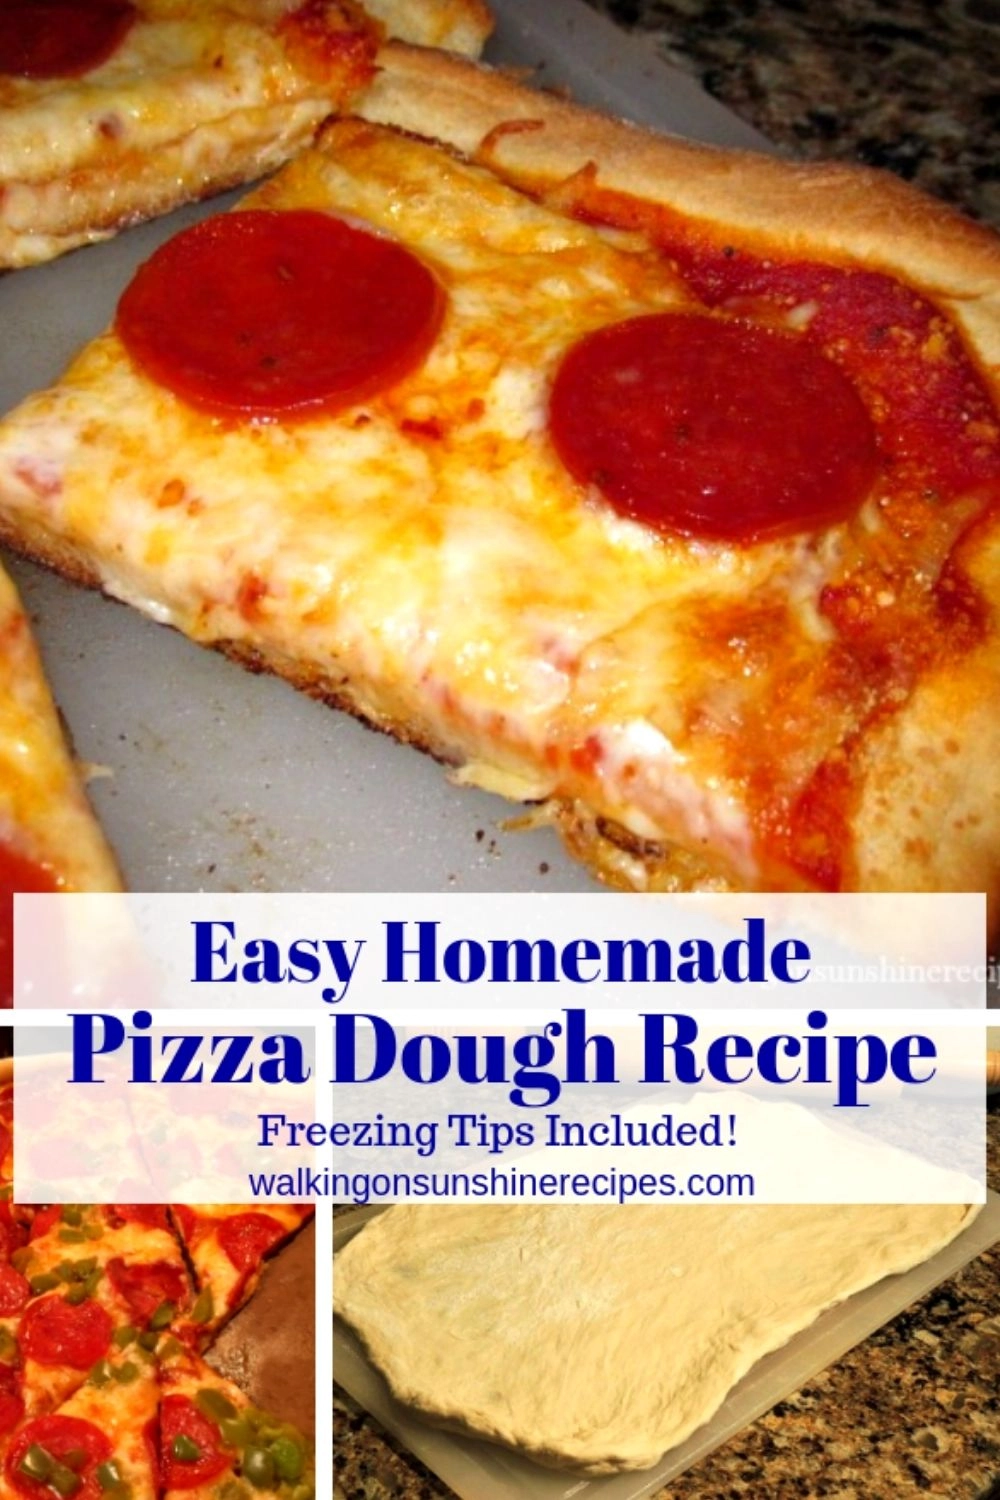 Homemade pizza dough recipe Pin 